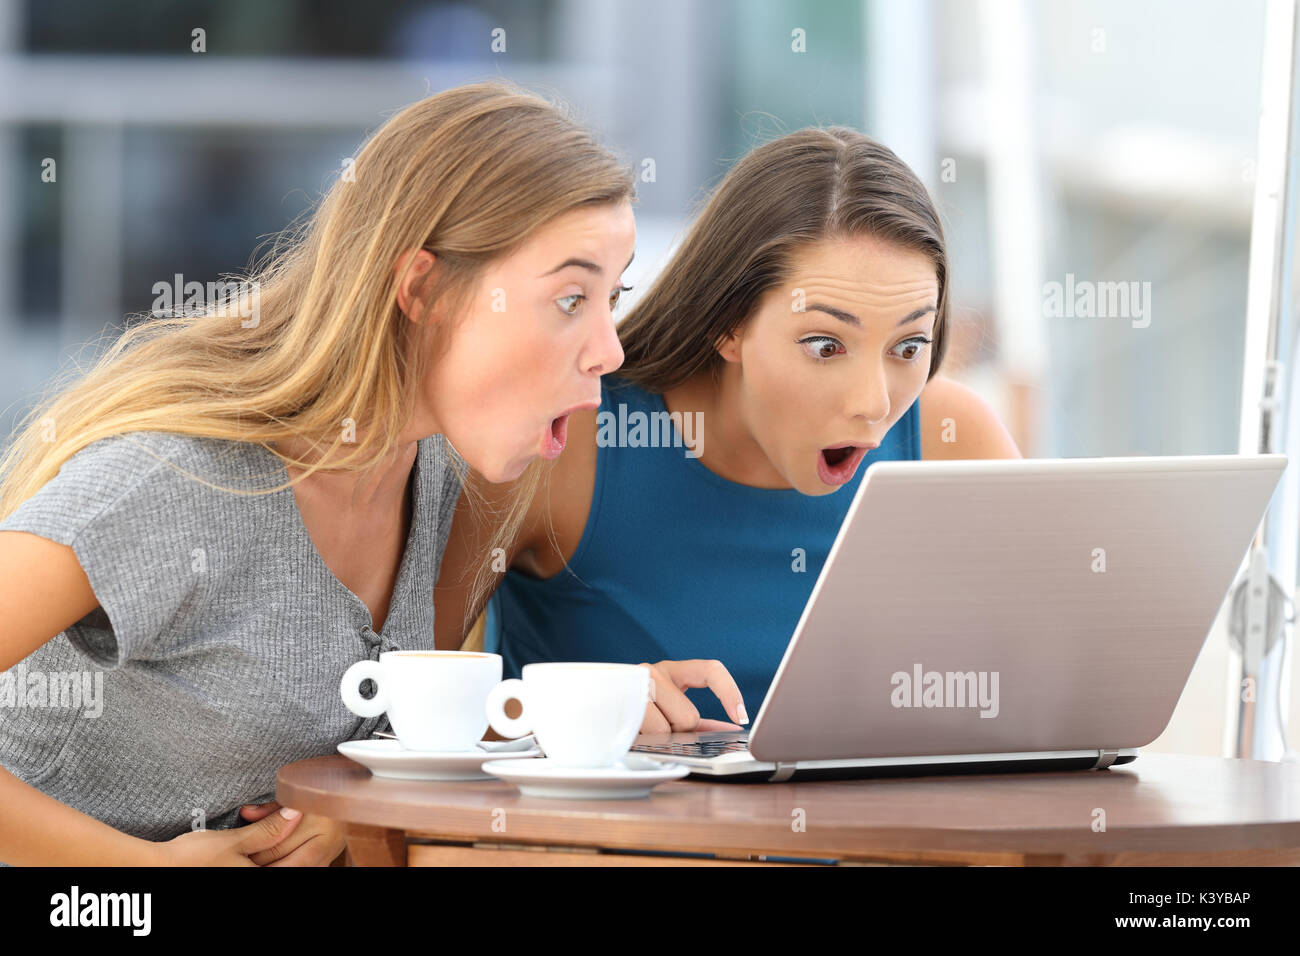 Deux amis surpris à regarder le contenu scandaleux dans un ordinateur portable assis dans un bar Banque D'Images